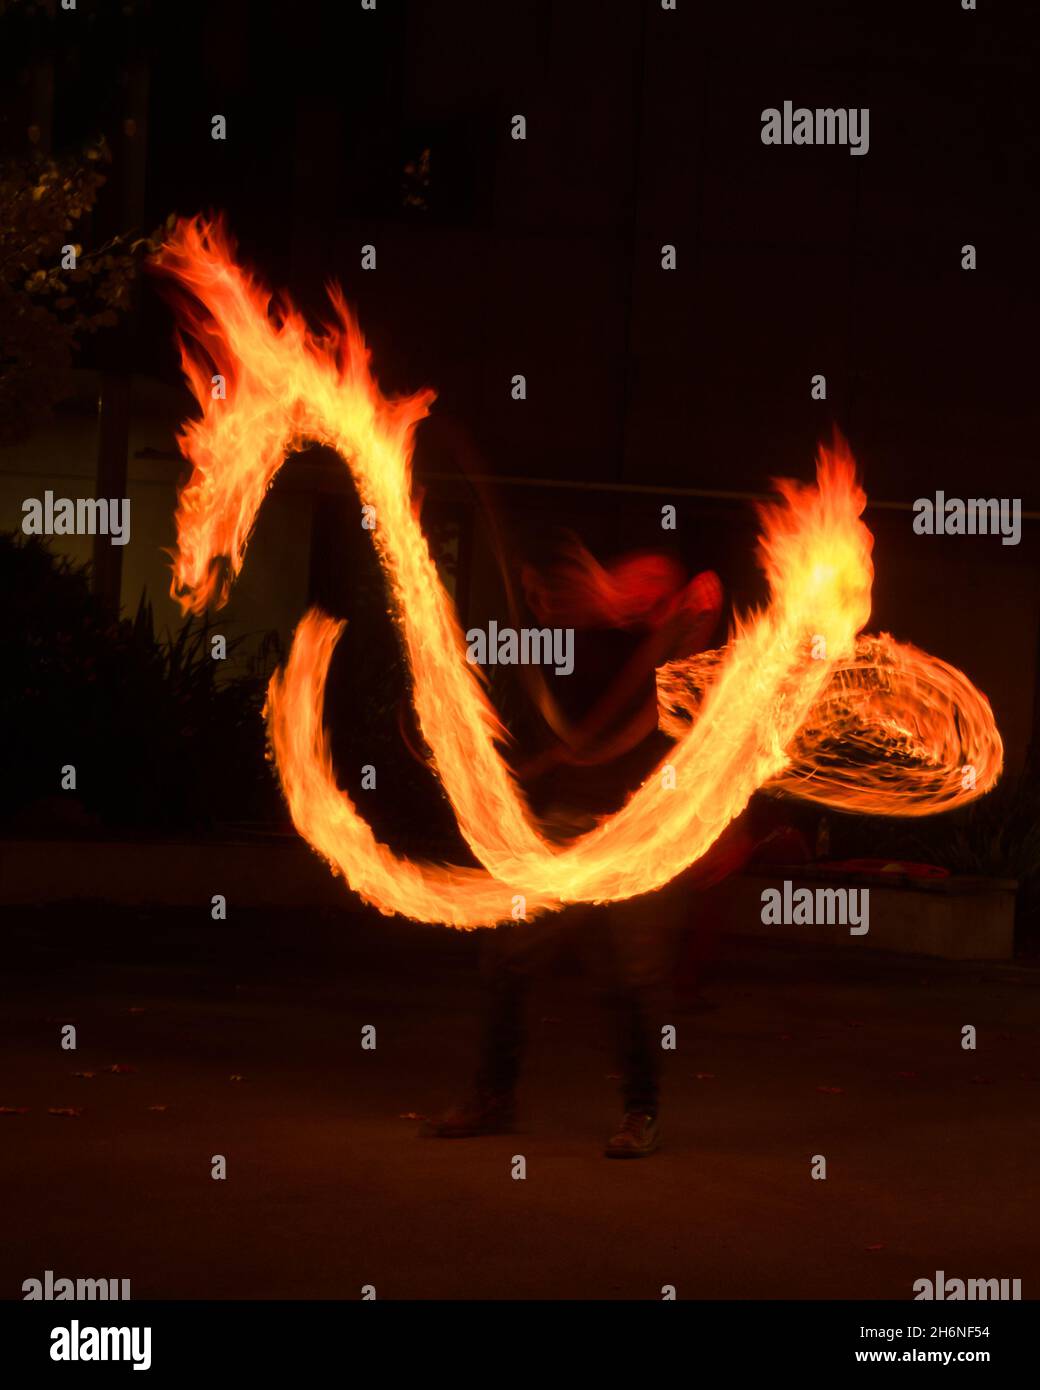 Künstler jongliert mit brennenden Poi bei Feuervorstellung. Langzeitbelichtung Bild der abstrakten Feuer Licht Malerei. Vertikales Format. Stockfoto